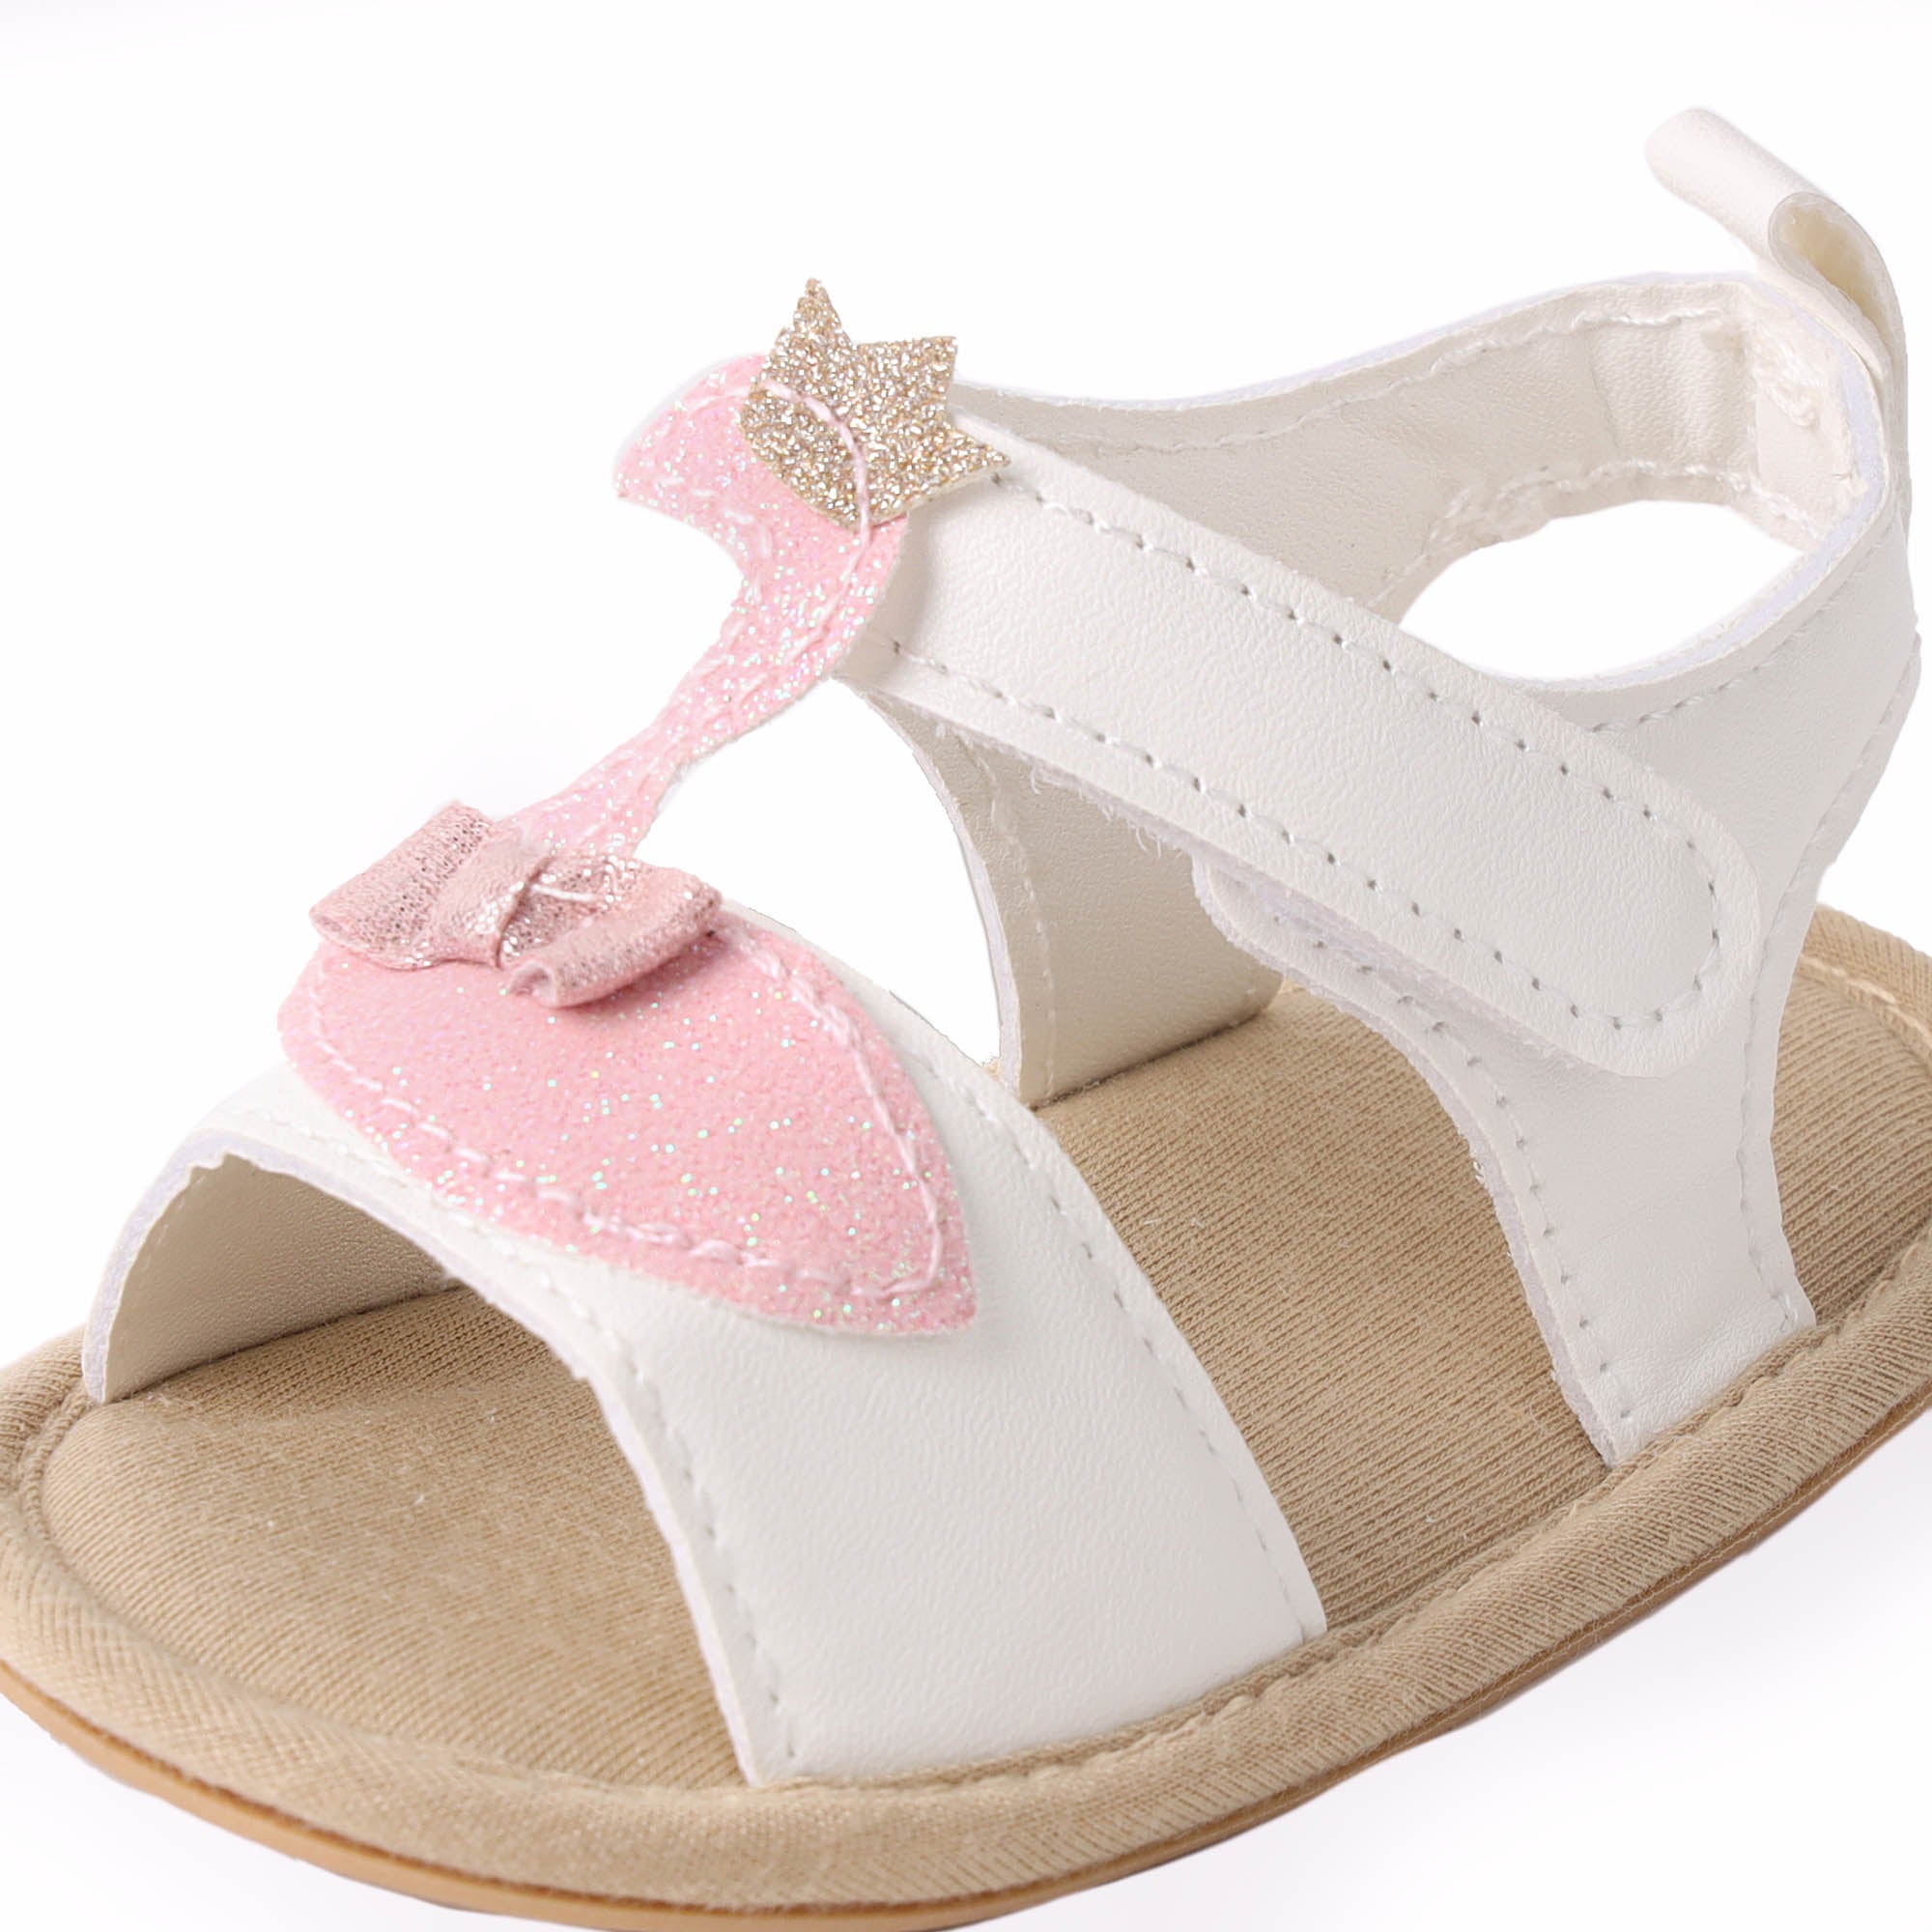 Kicks & Crawl- Fancy Flamingo Baby Sandals